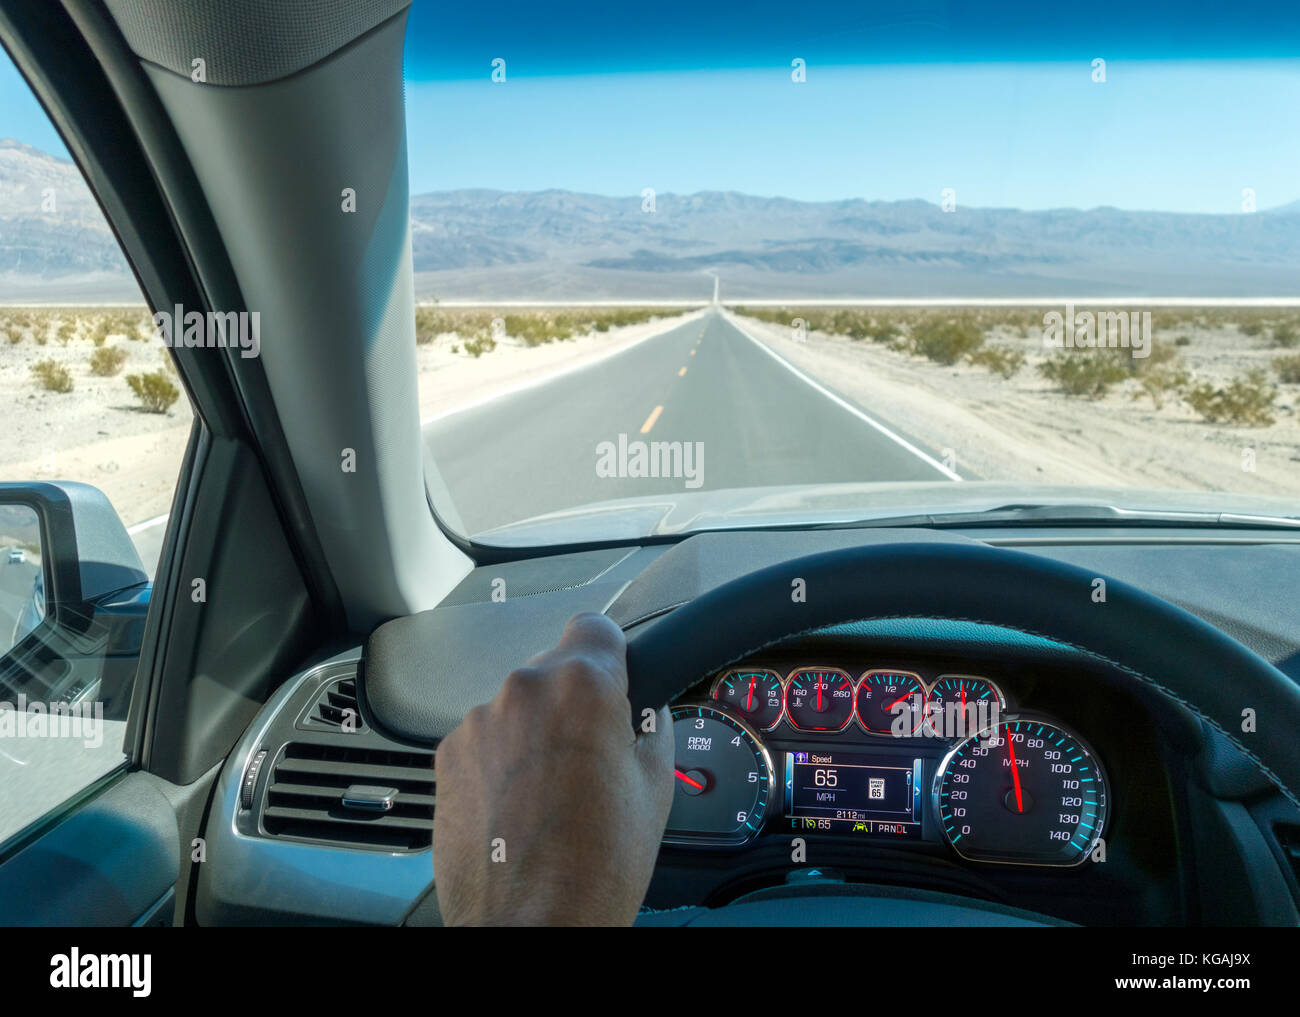 Death Valley Scenic Byway. Viaggio su strada guidando il punto di vista con il cruscotto e il regolatore di velocità a 65 km/h. 65 km/h il limite massimo di velocità sul cruscotto digitale. Foto Stock